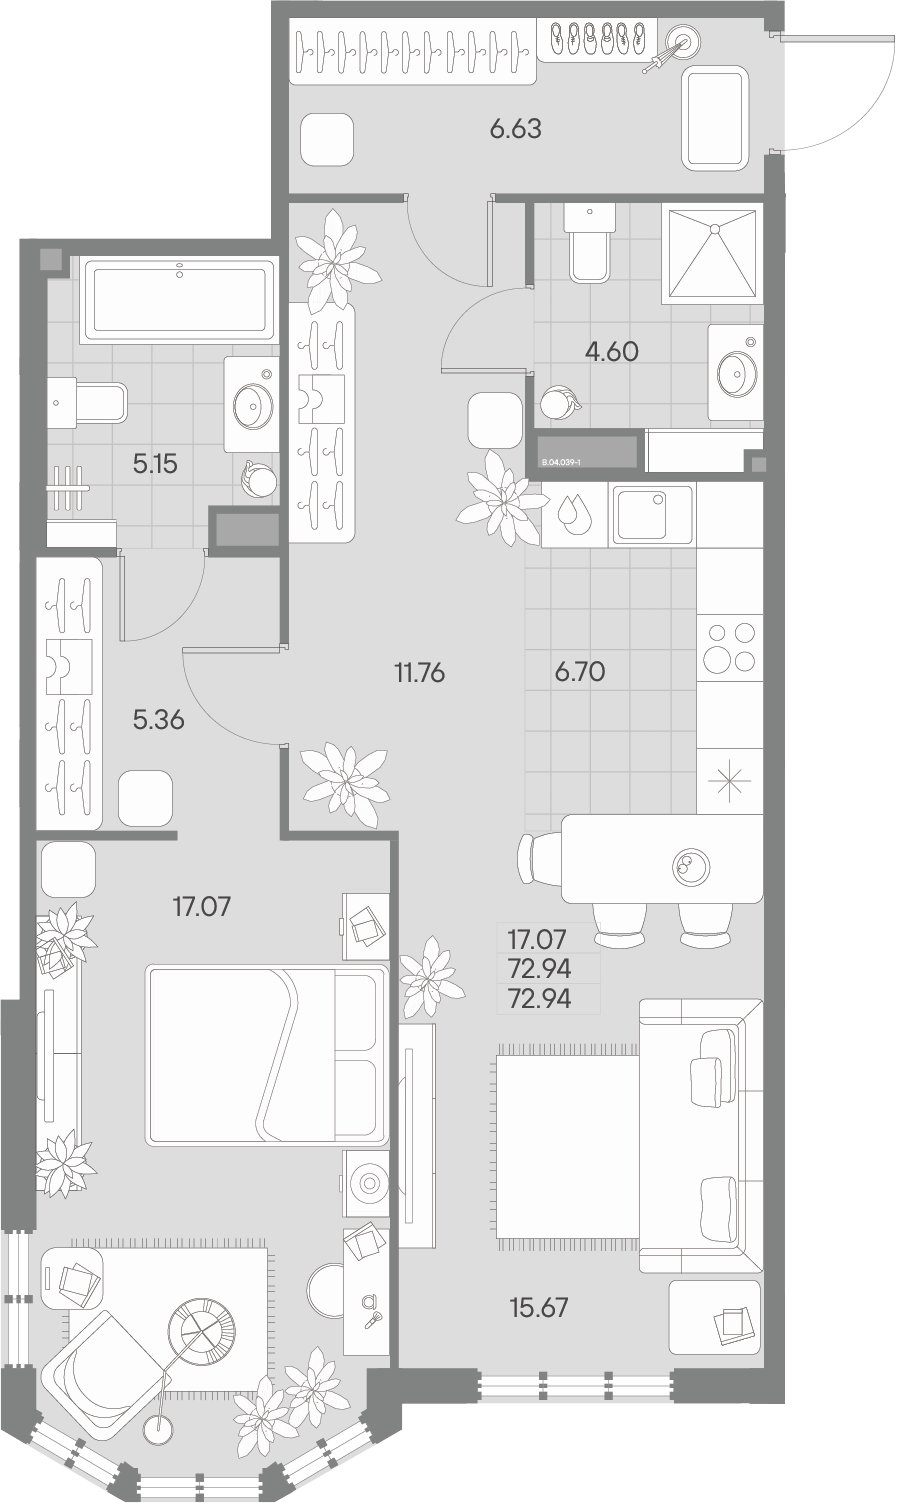 2-комнатная квартира  №39-1 в AMO: 72.94 м², этаж 4 - купить в Санкт-Петербурге